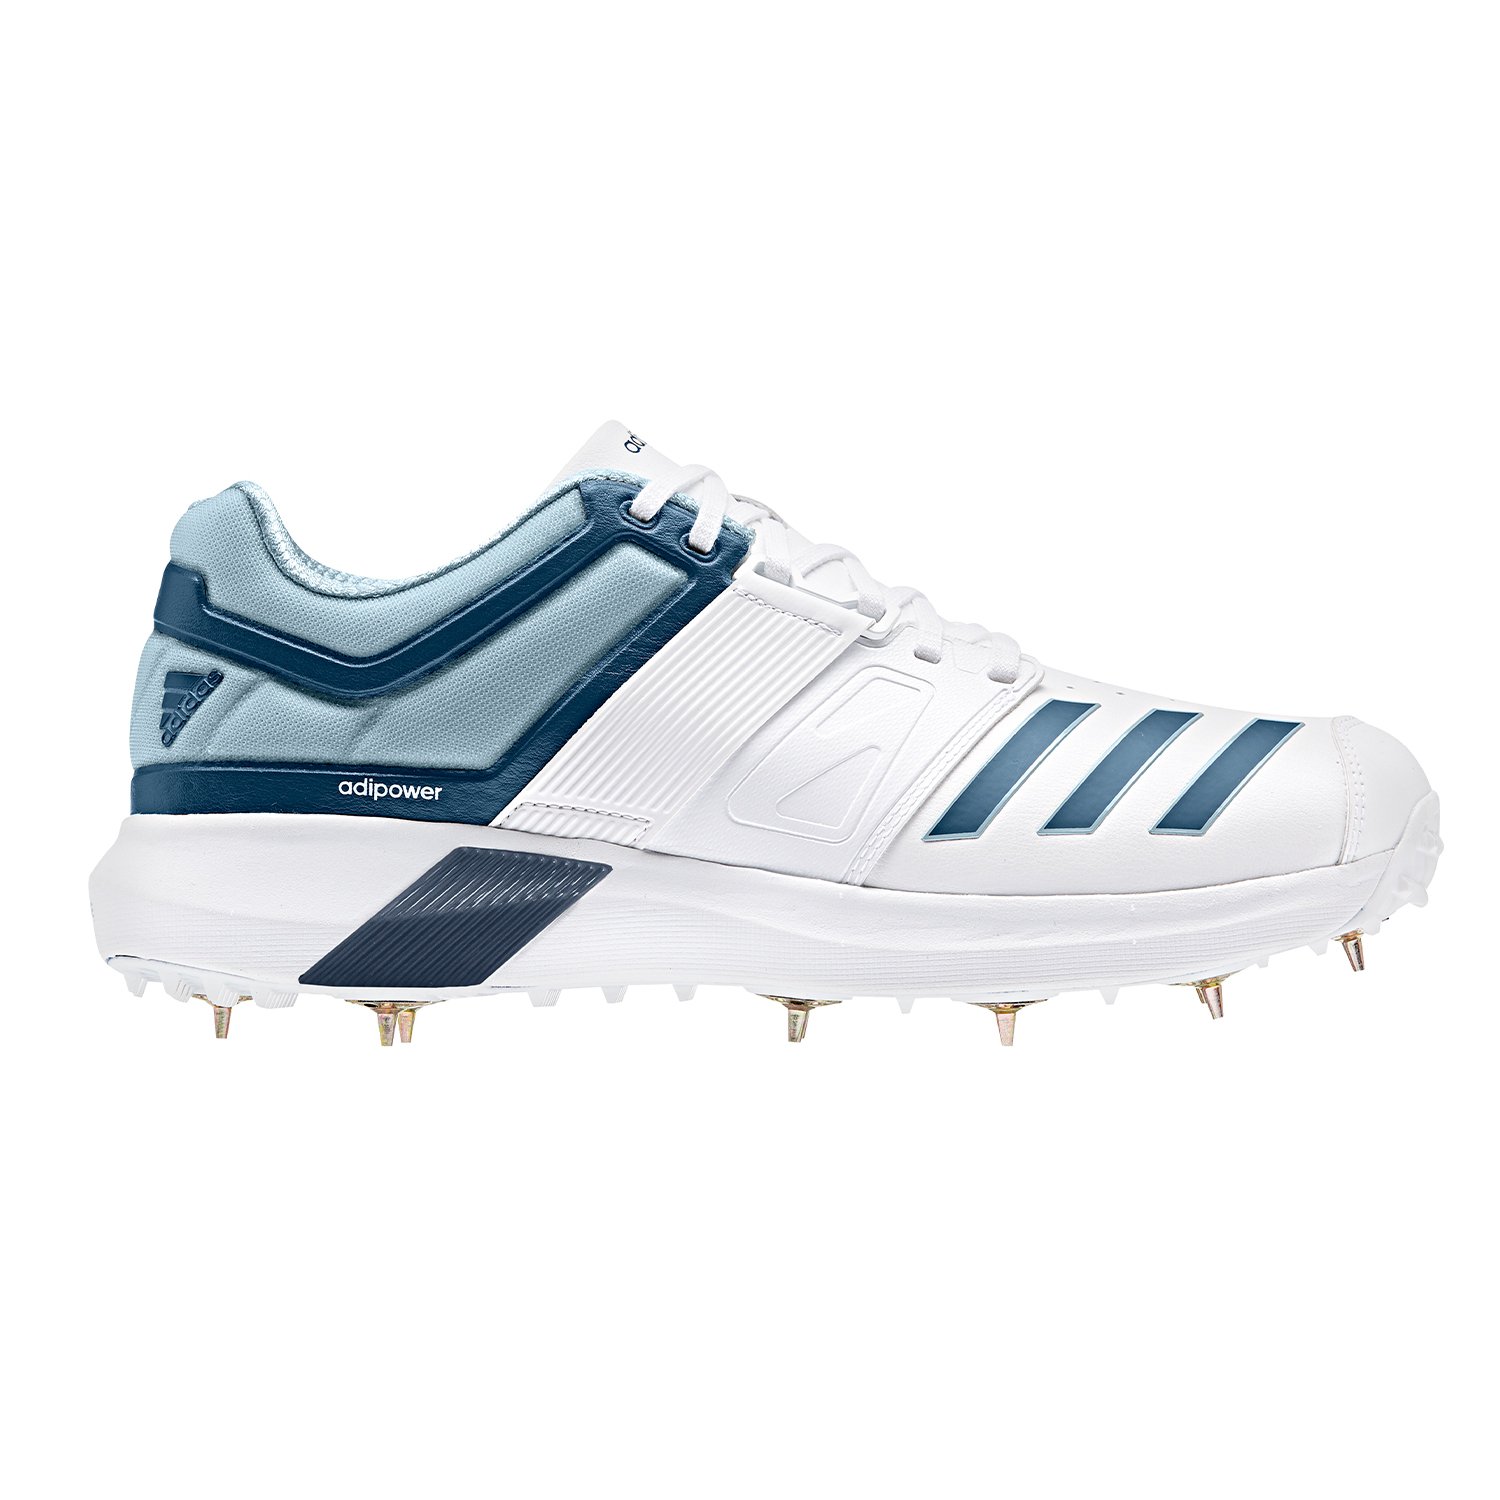 Adipower Vector Cricket Shoe (19/20) - Shoes | Cricket Express - Adidas  2019/20